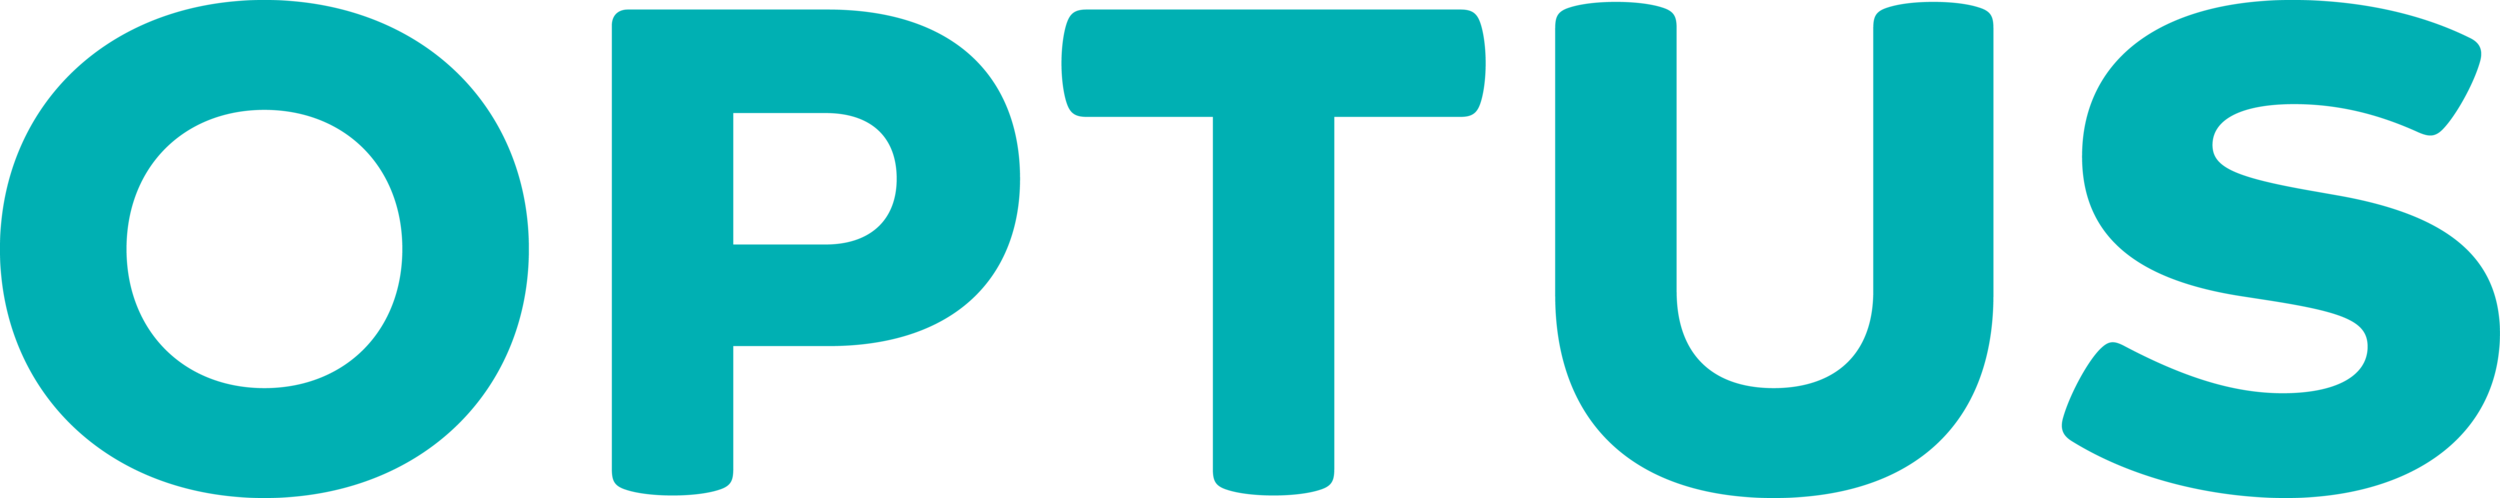 Optus Teal Logo High Res.png